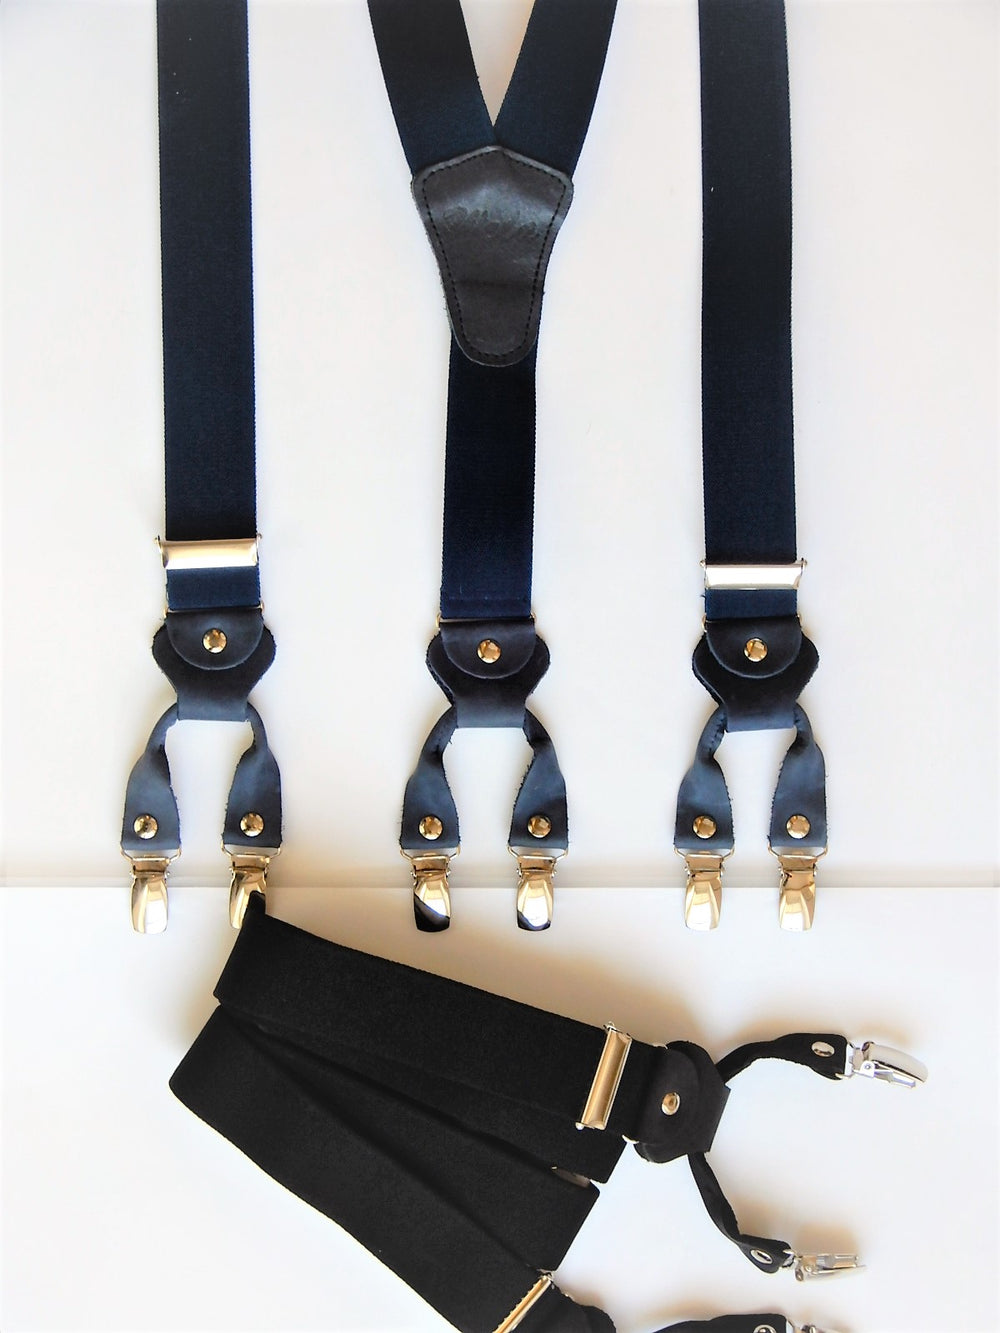 6 Klipse Hosenträger mit Leder-Rollenzug in Blau und Schwarz - KüstenKlaus